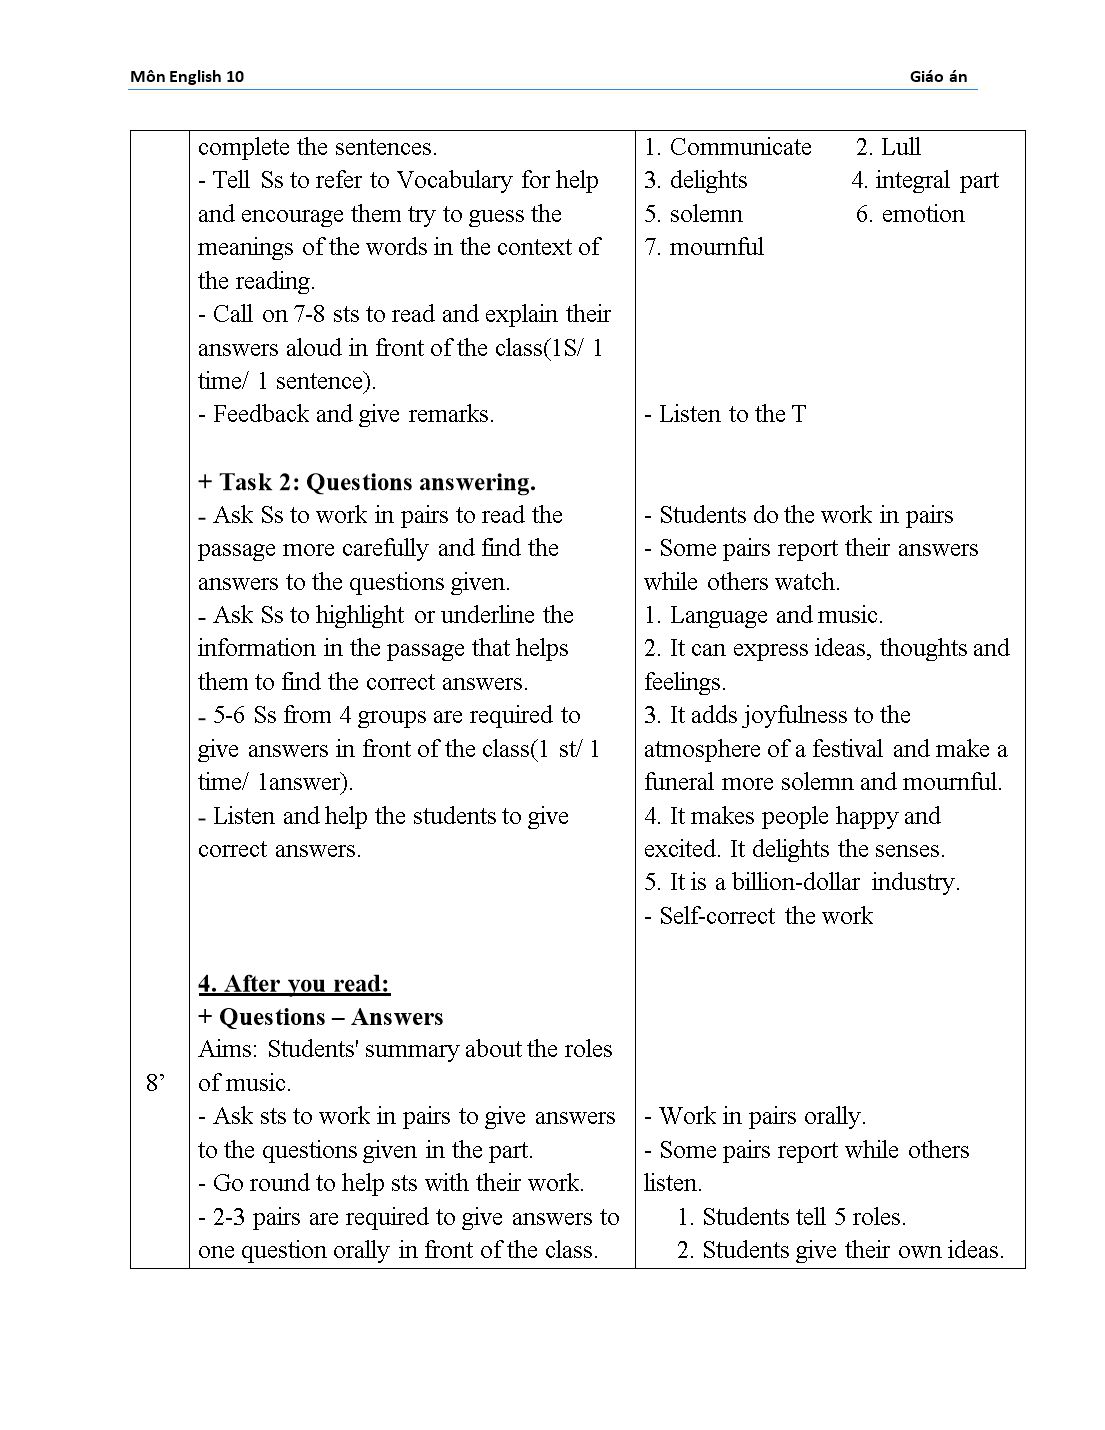 Giáo án môn Tiếng Anh Lớp 10 - Unit 12: Music trang 3